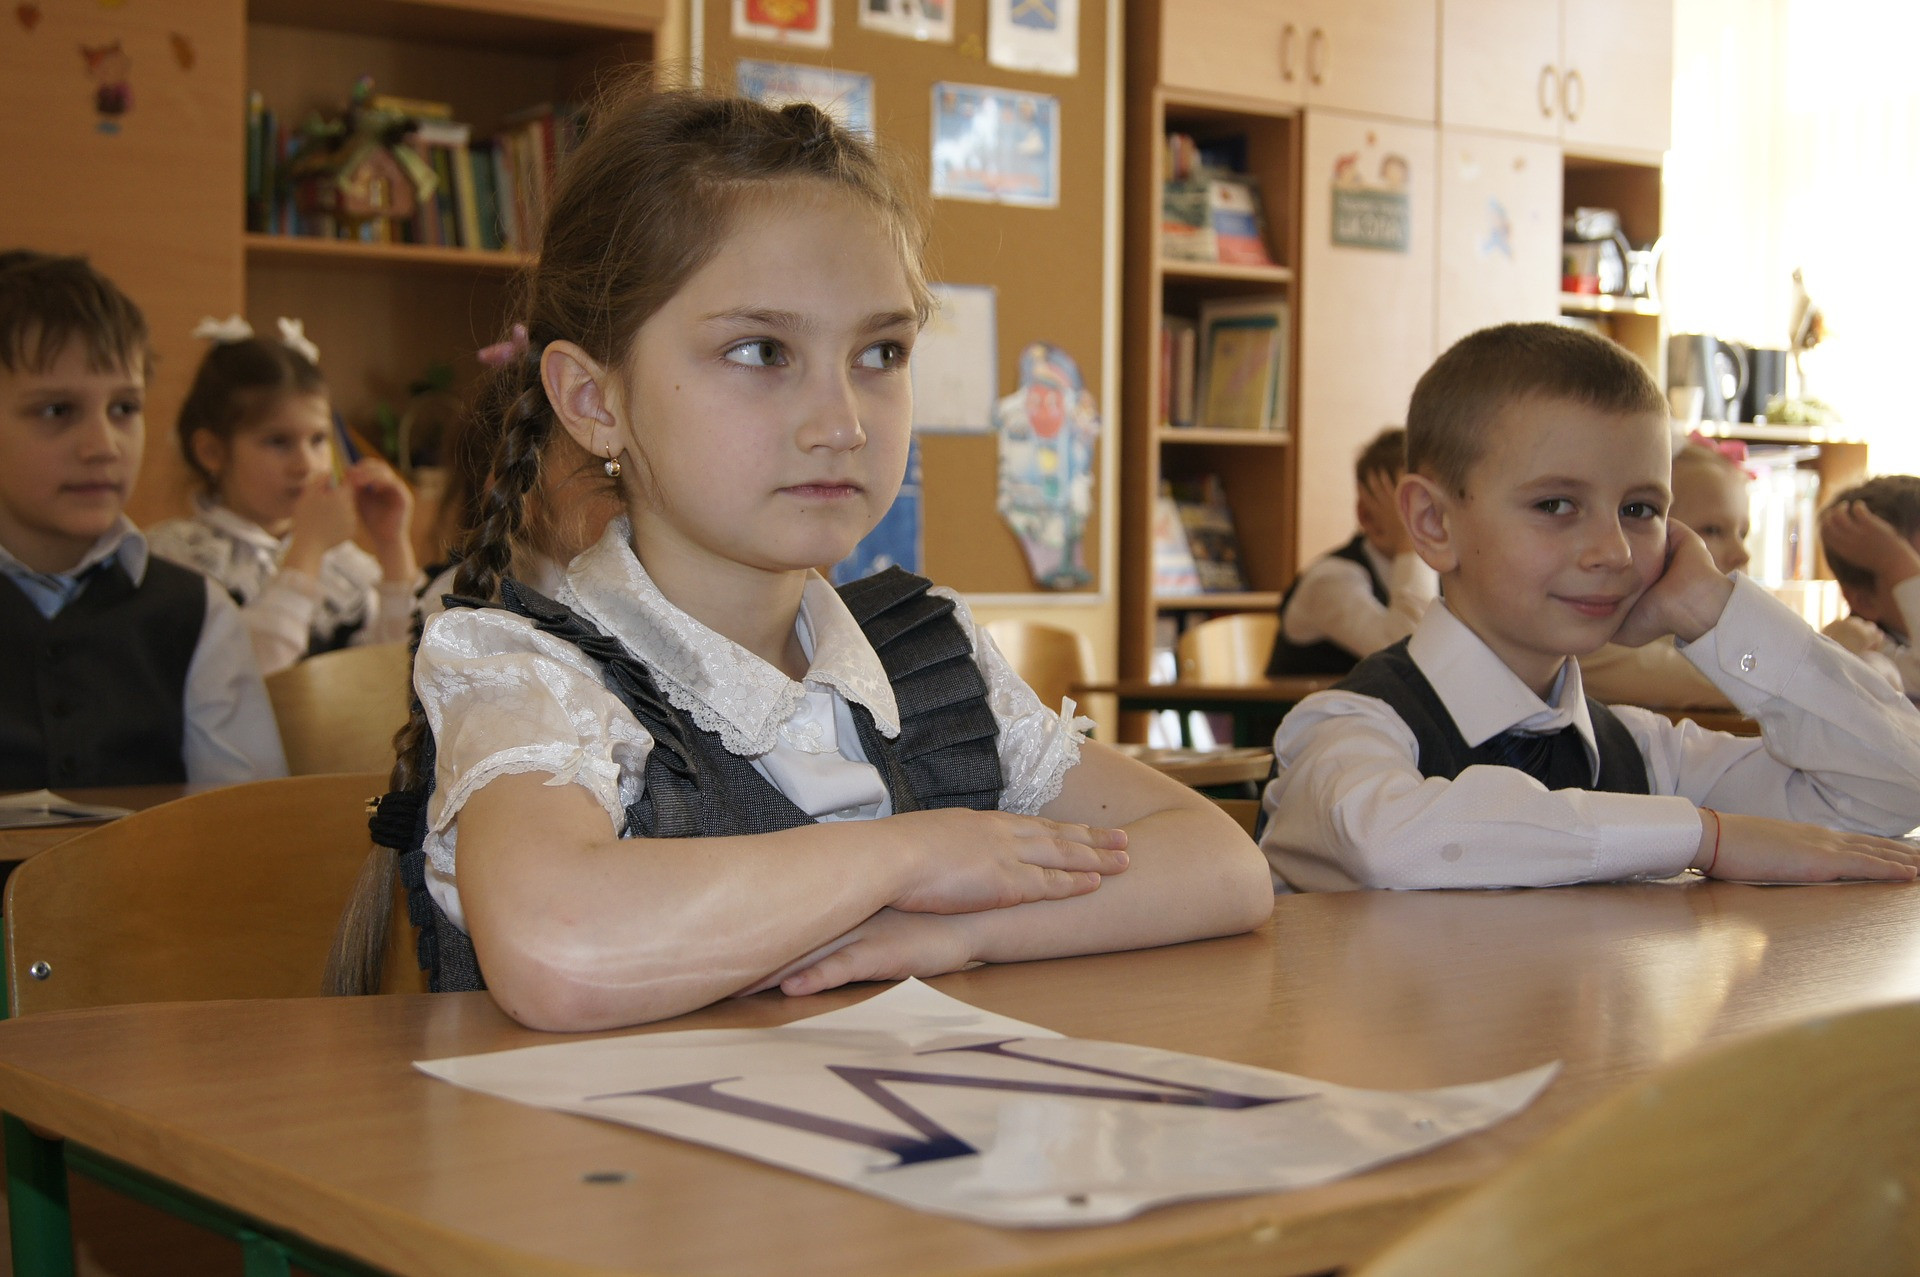 Школьникам в РФ запретили на уроках пользоваться мобильными телефонами